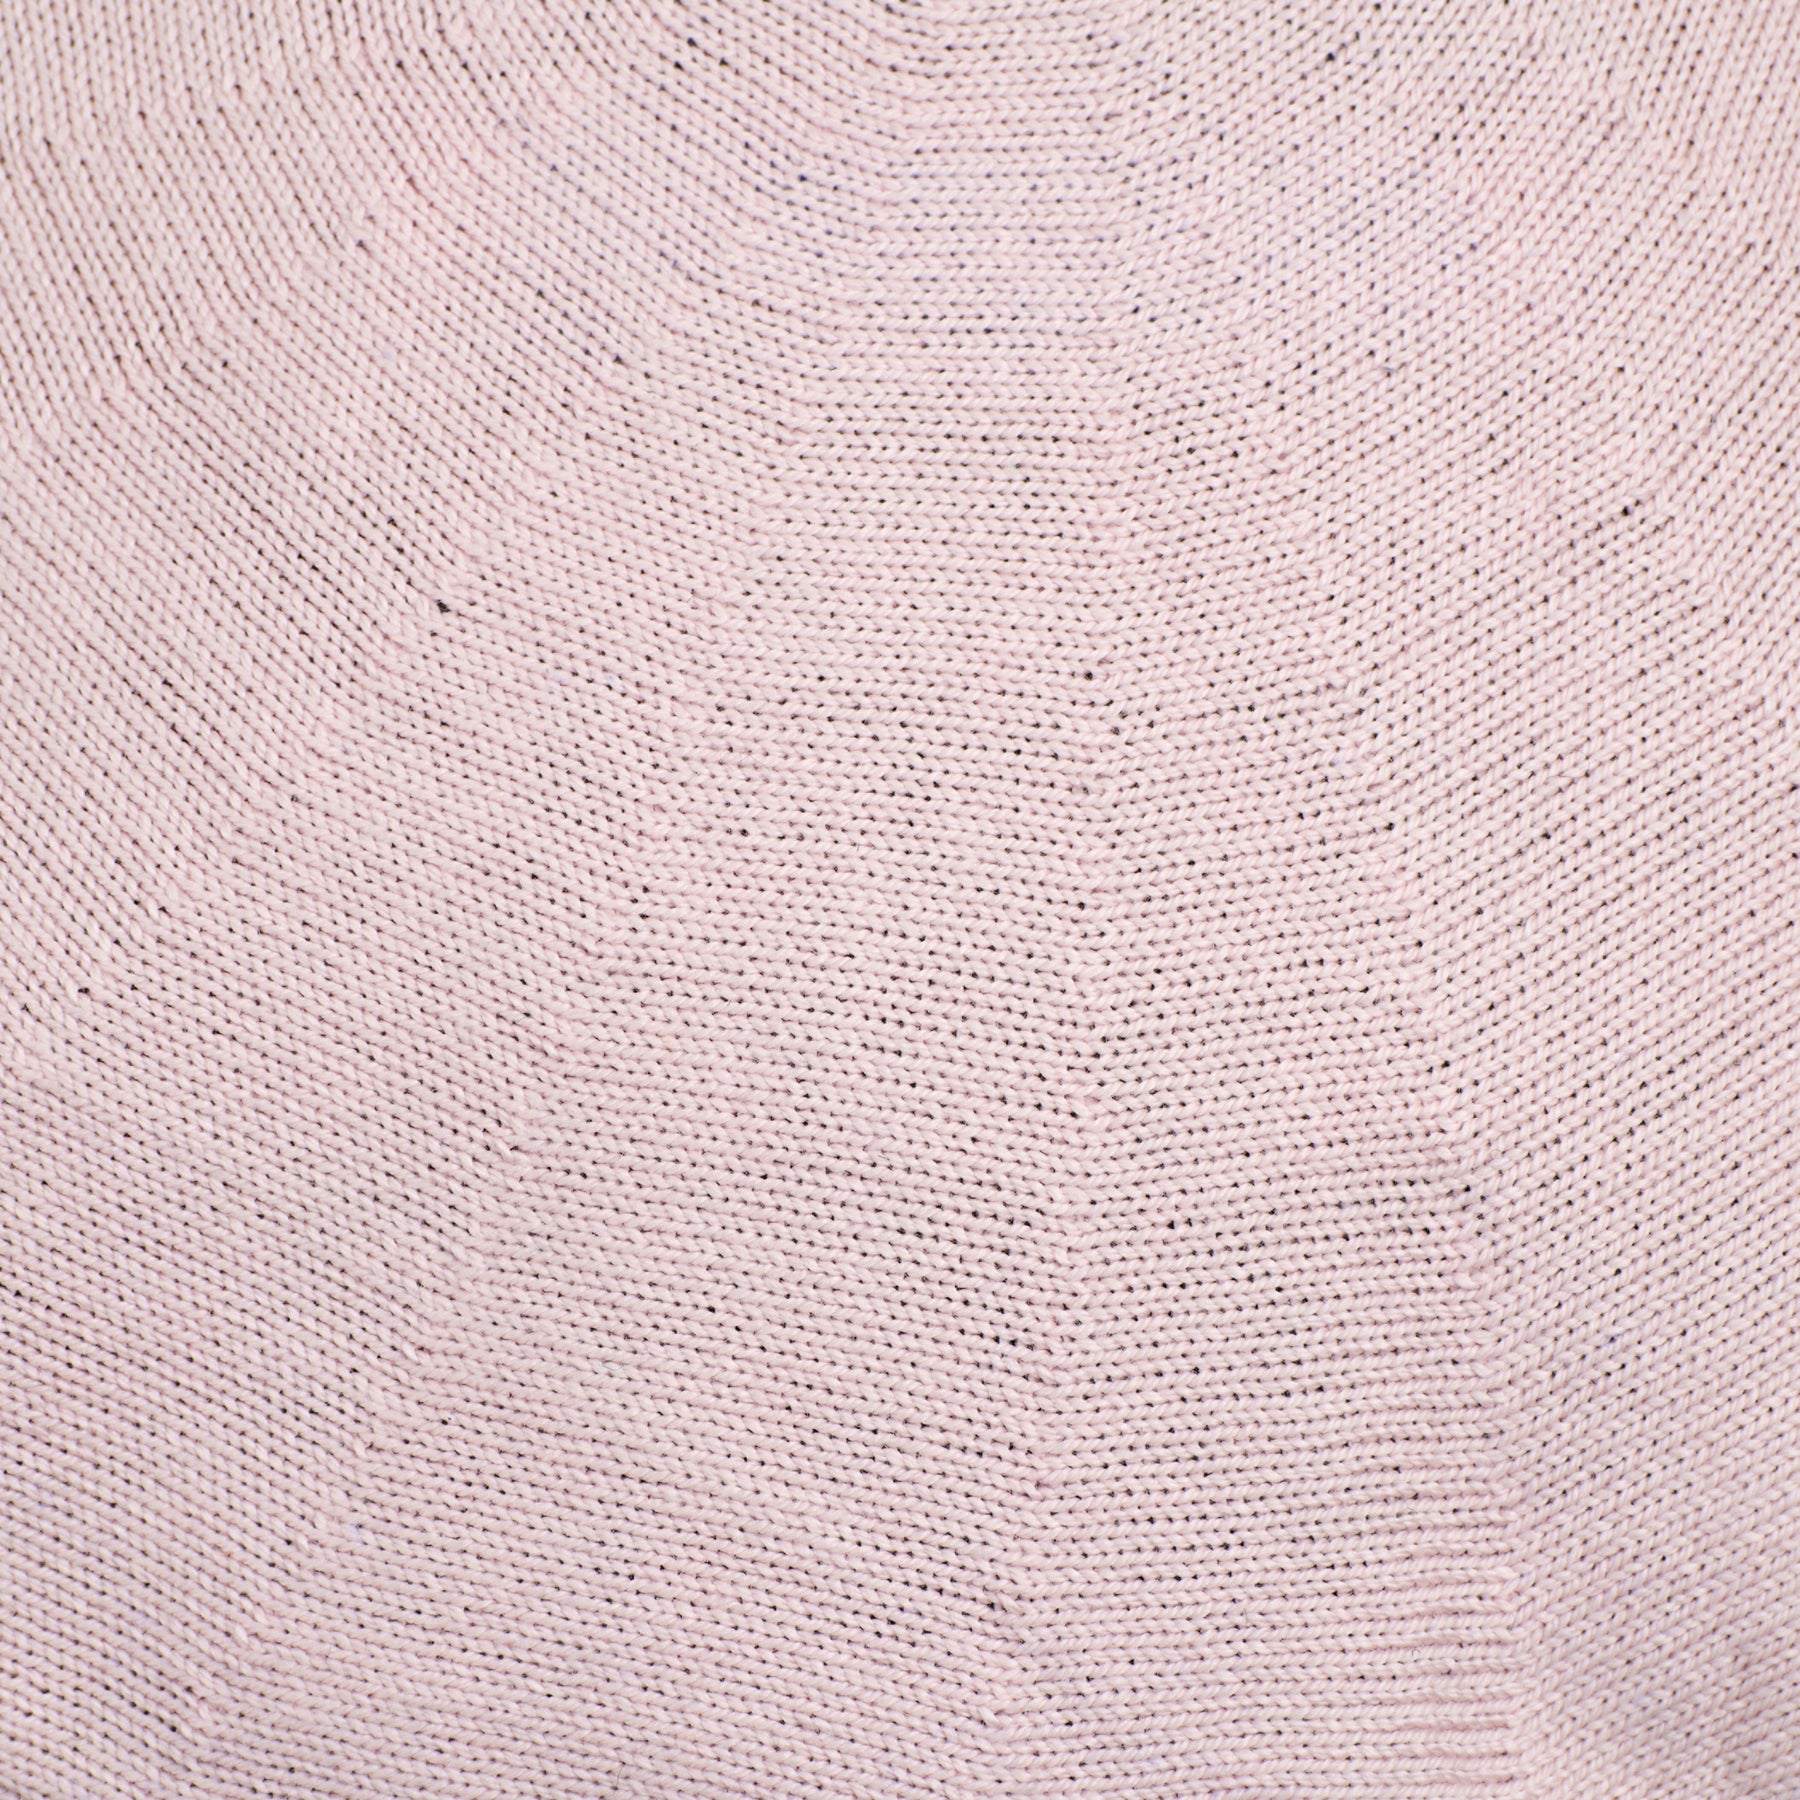 Laulhère Authentique Cotton Beret Light Pink